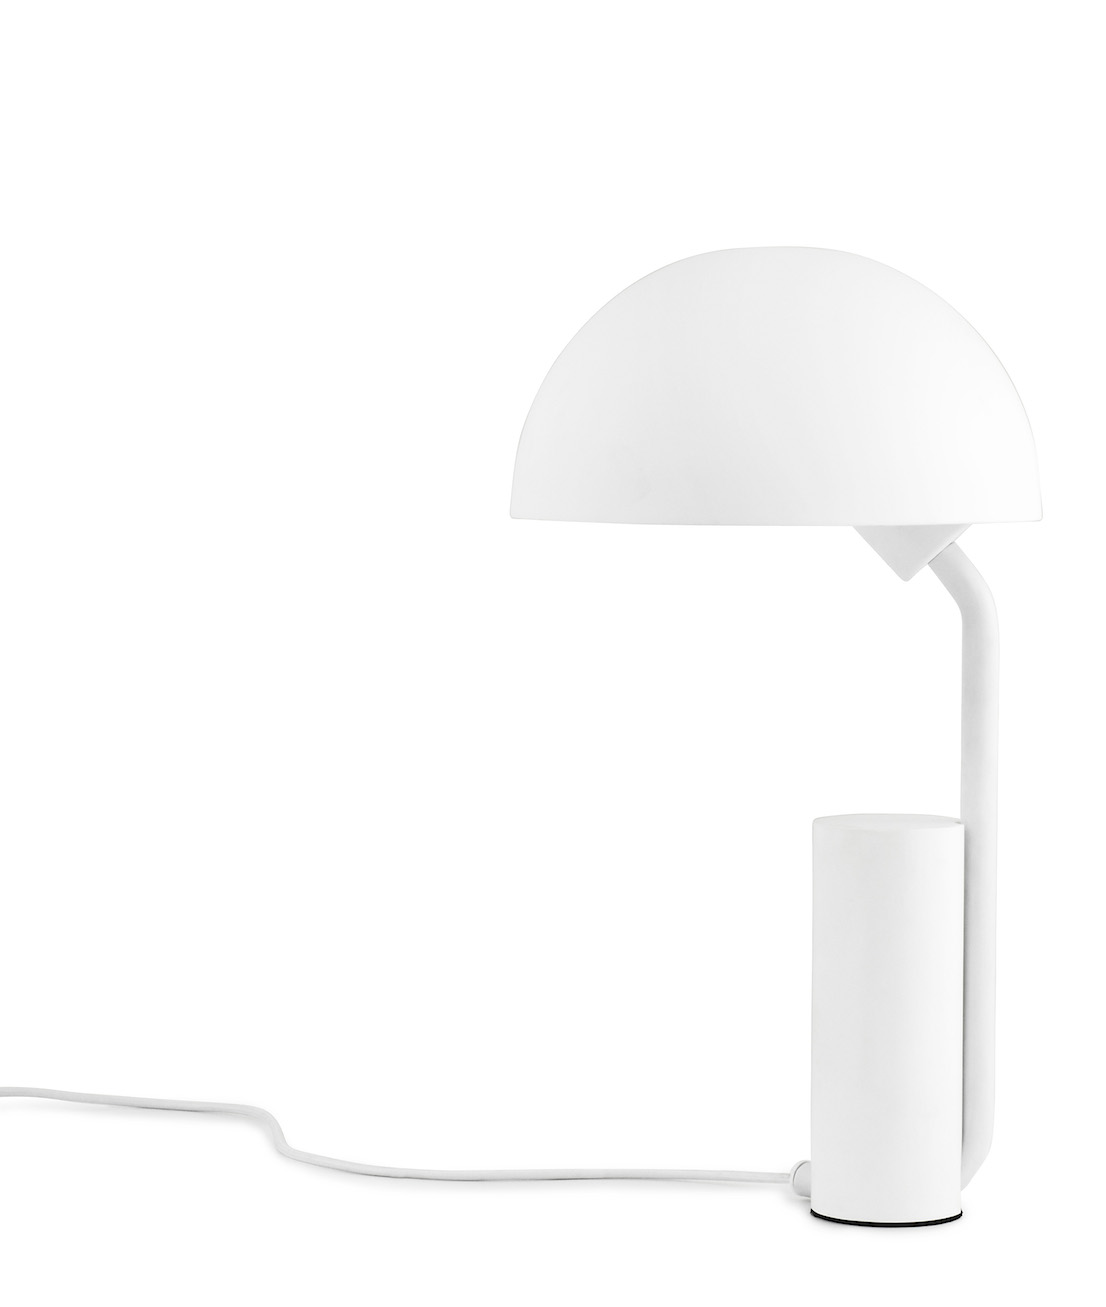 Lampada Cap, design by KaschKasch per Normann Copenhagen.